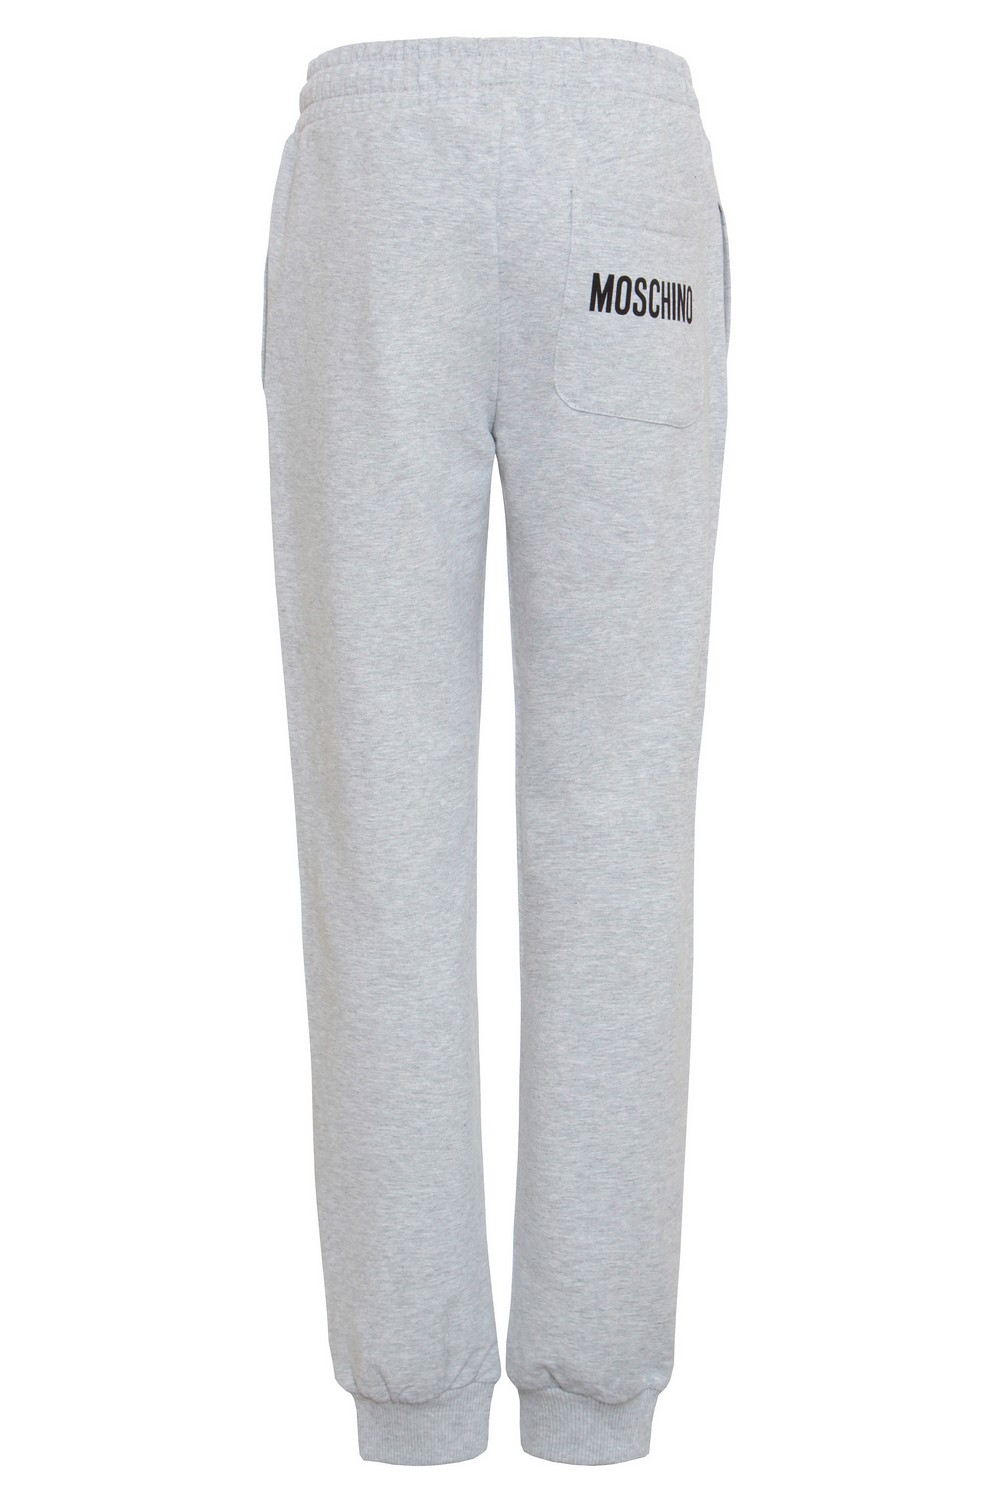 Moschino Спортивные брюки с контрастным принтом